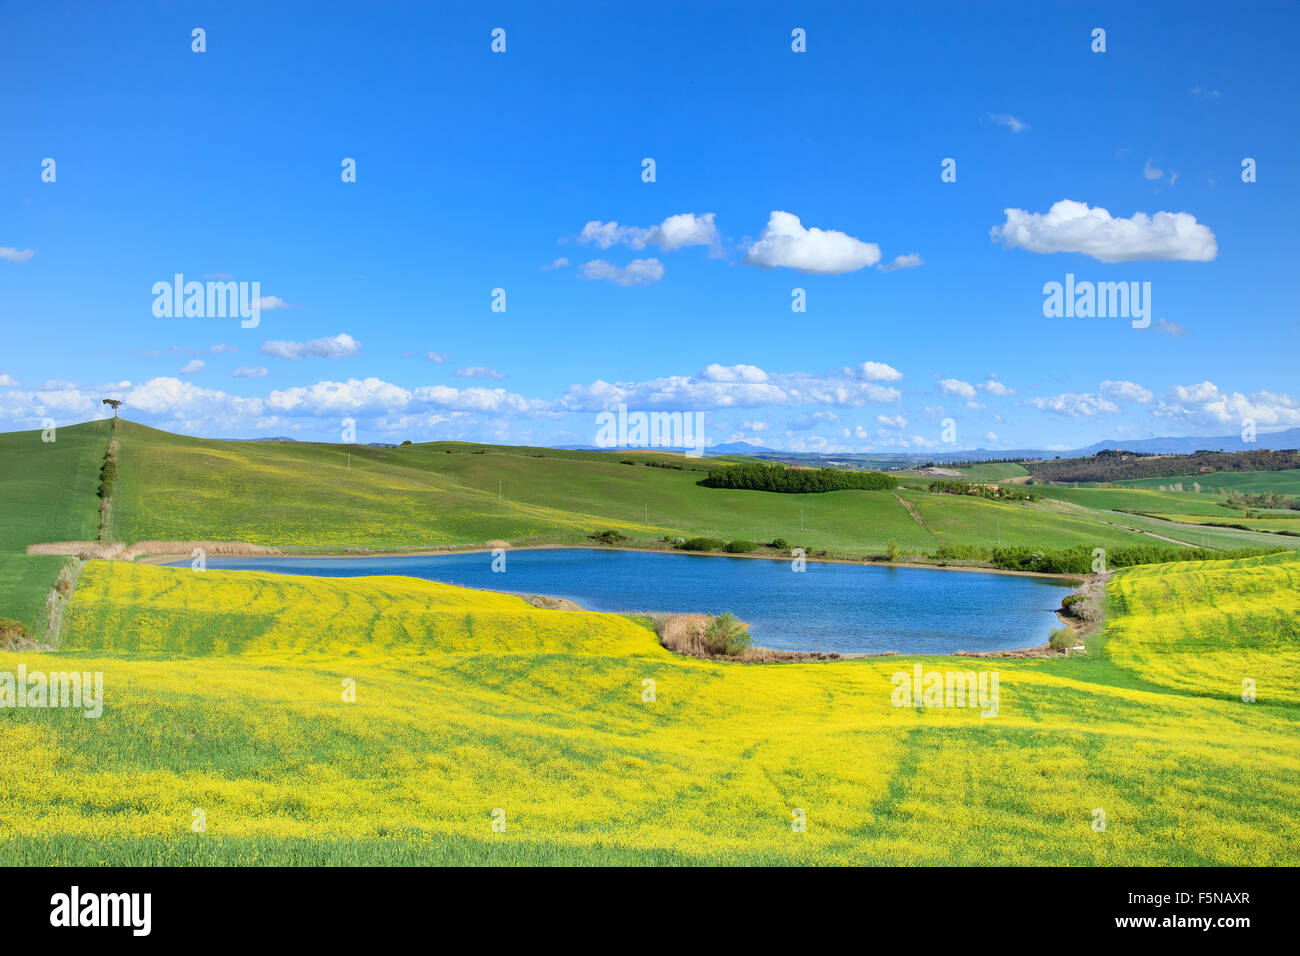 Toscana, Crete Senesi Paesaggio vicino Siena, Italia, Europa. Piccolo lago blu, verde e giallo campi, cielo blu con nuvole di piccole dimensioni Foto Stock